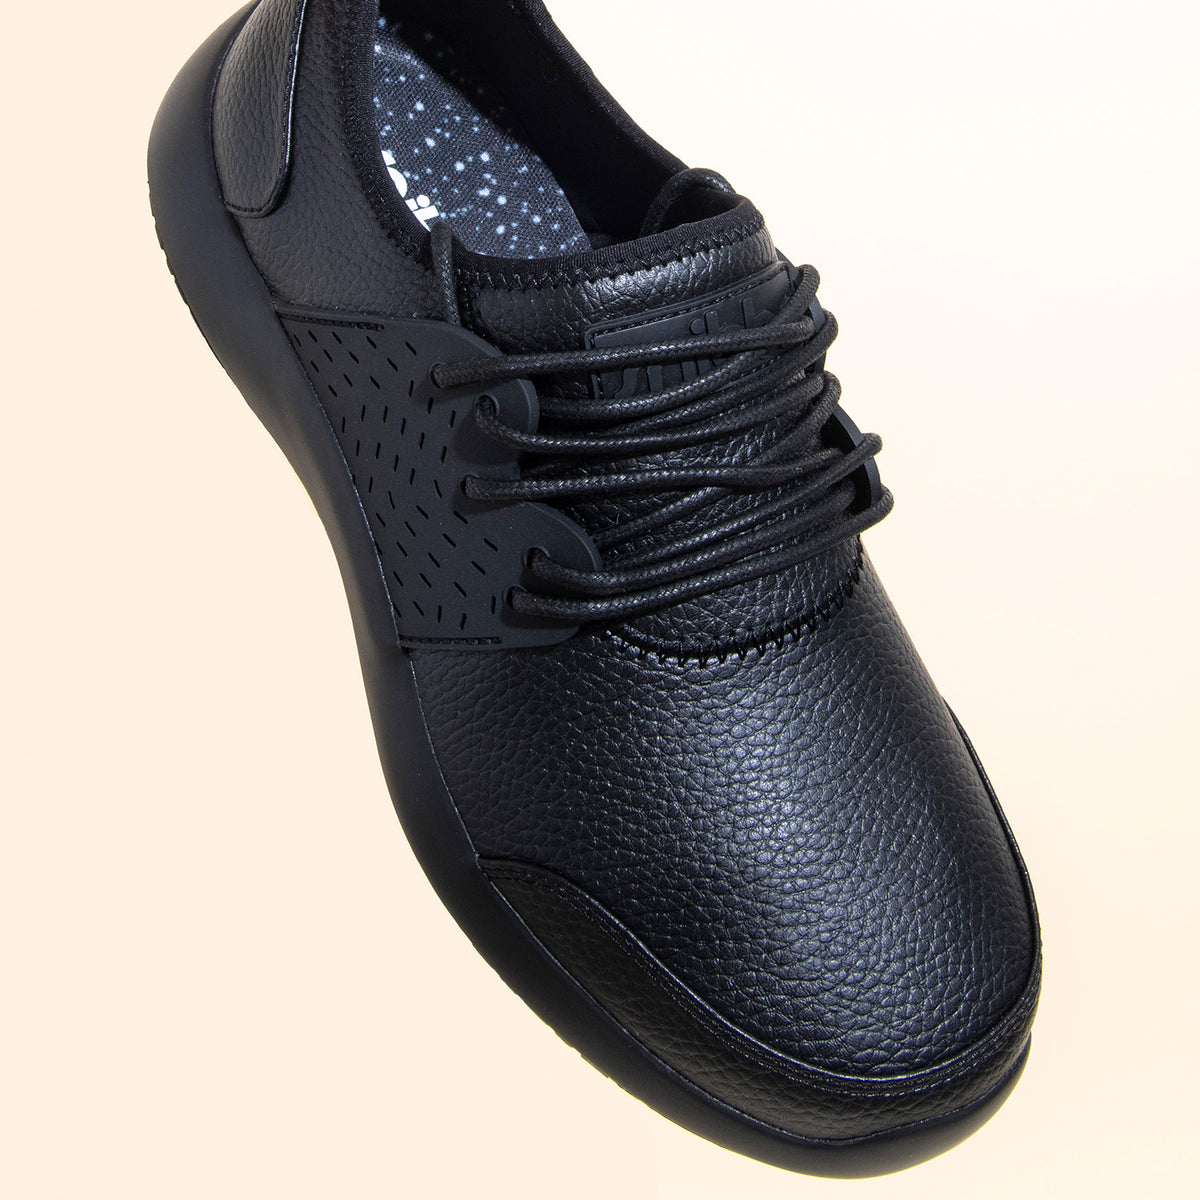 Snibbs - Spacecloud Premium 2.0 Unisex Work Sneaker - Eclipse Black